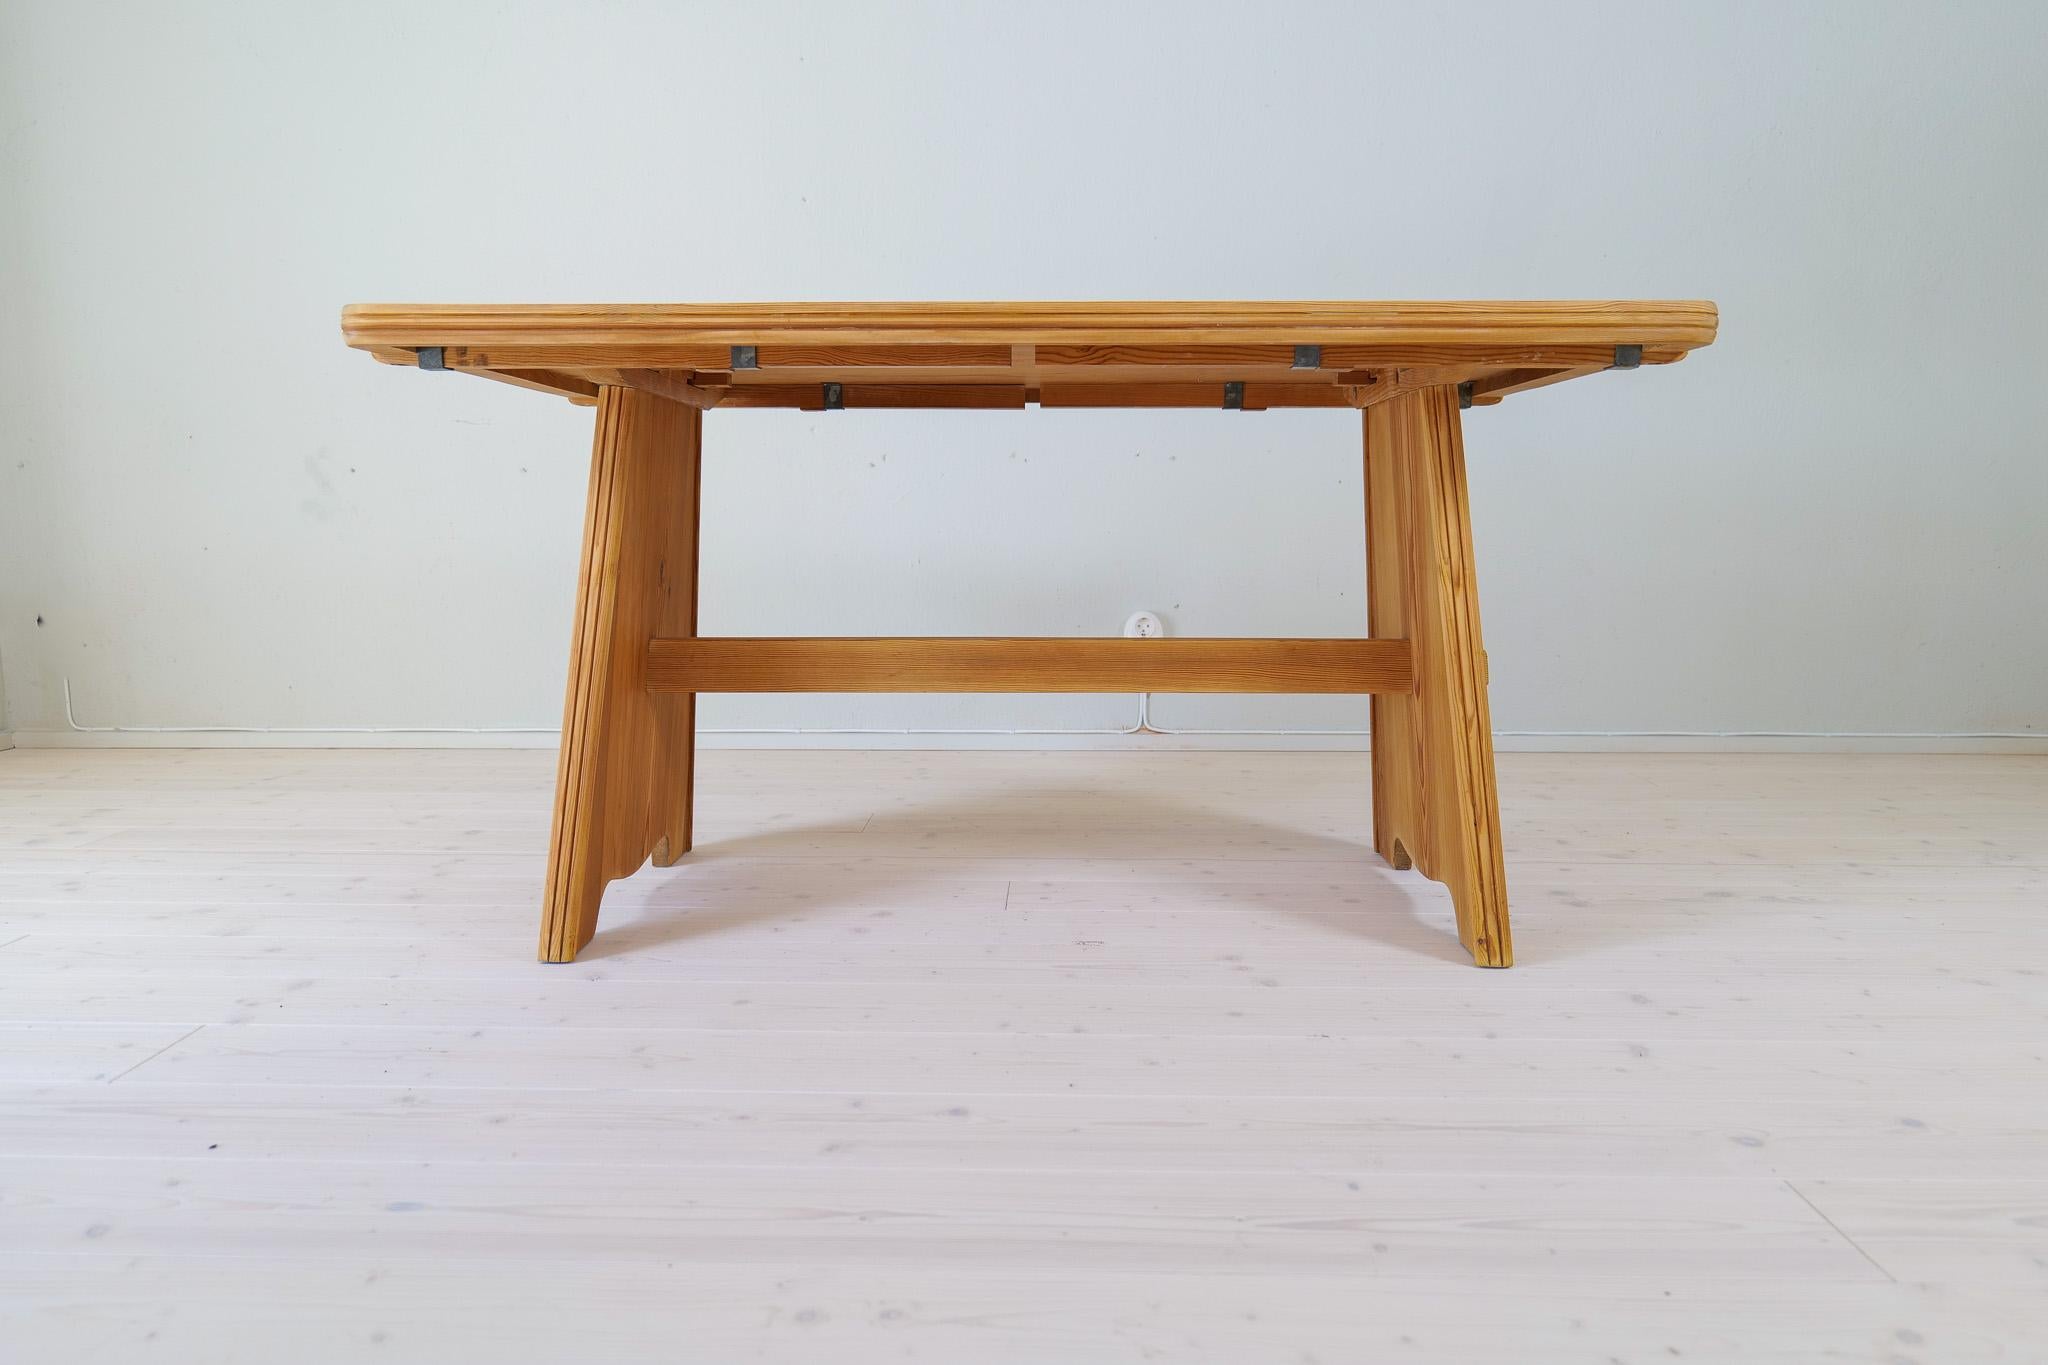 Wunderschöner Esstisch aus massiver Kiefer, hergestellt in Schweden von Svensk Fur und entworfen von Göran Malmvall. Dieser Tisch ist ein hervorragendes Beispiel für schwedische funktionale Schlichtheit und hohe Handwerkskunst.
Guter